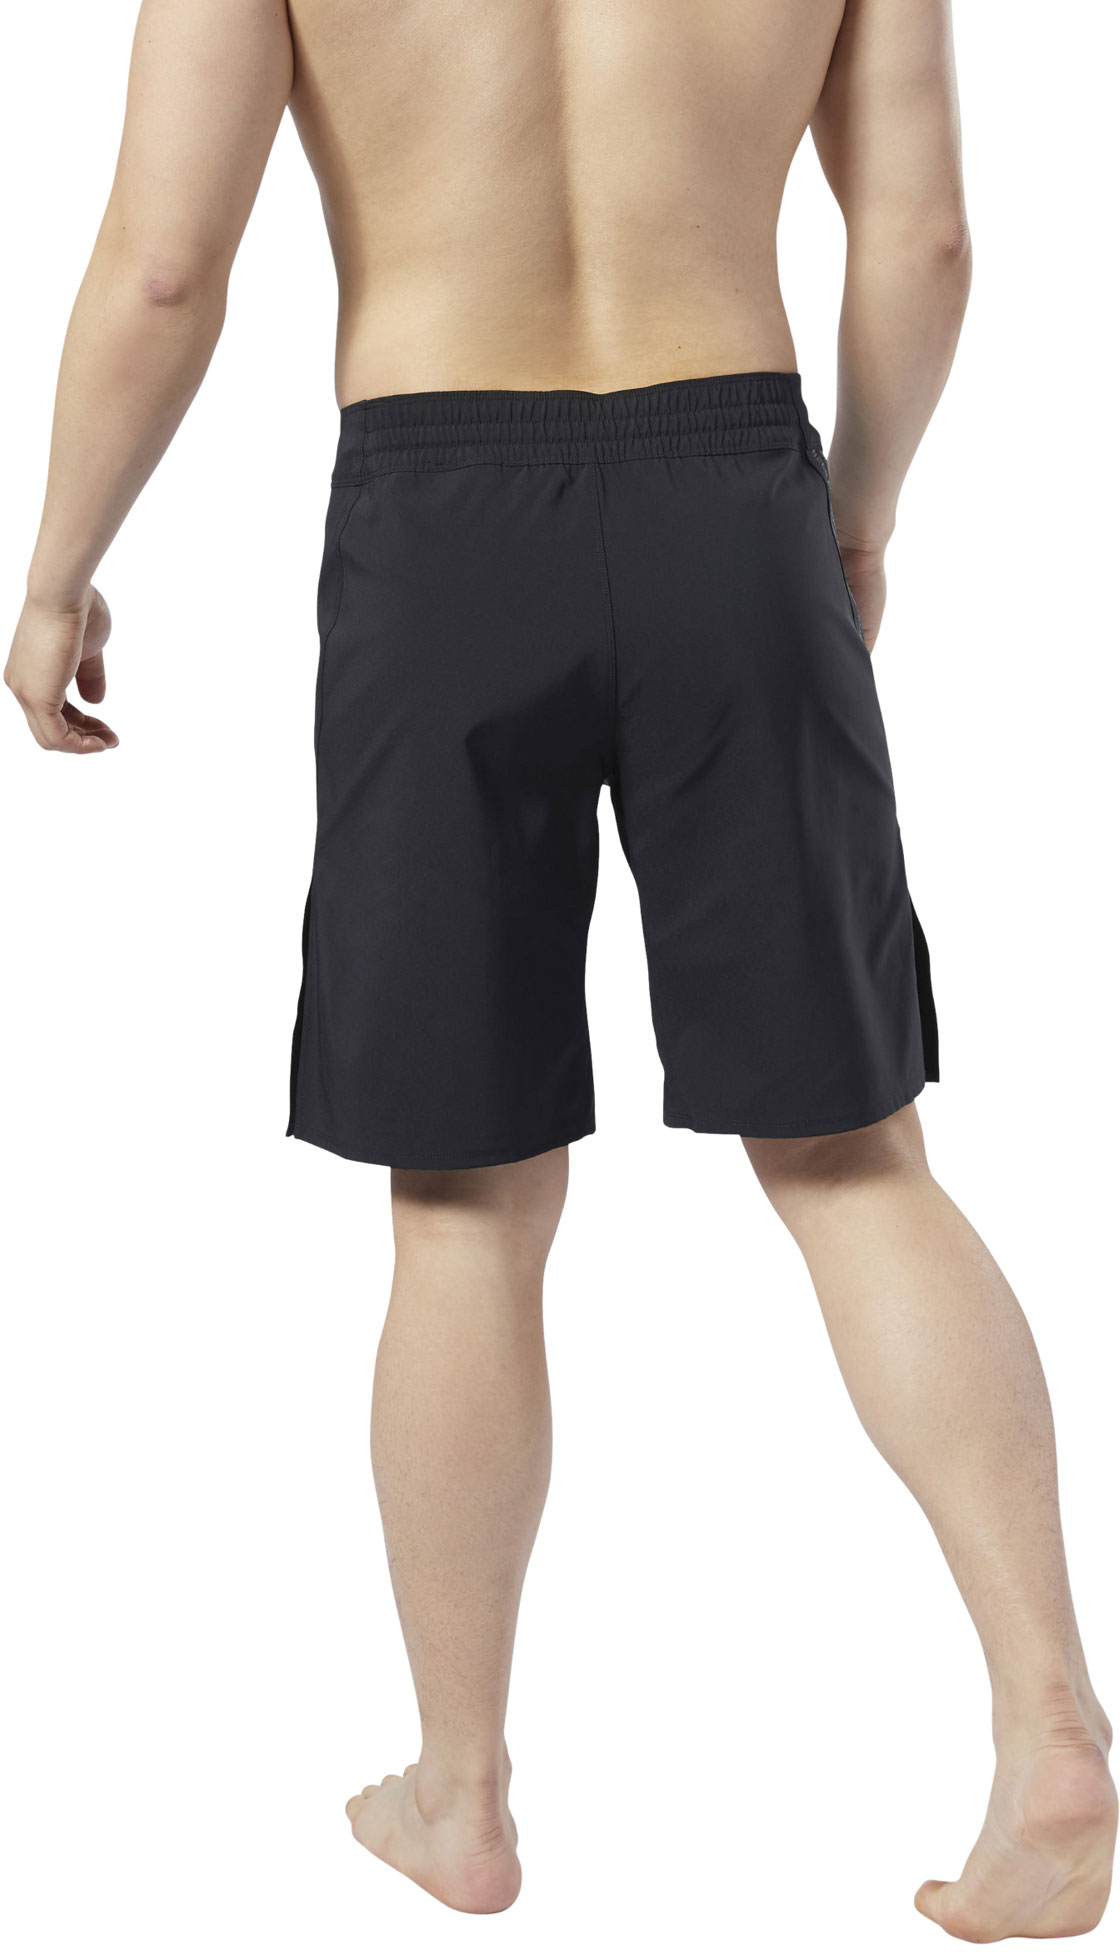 MMA shorts